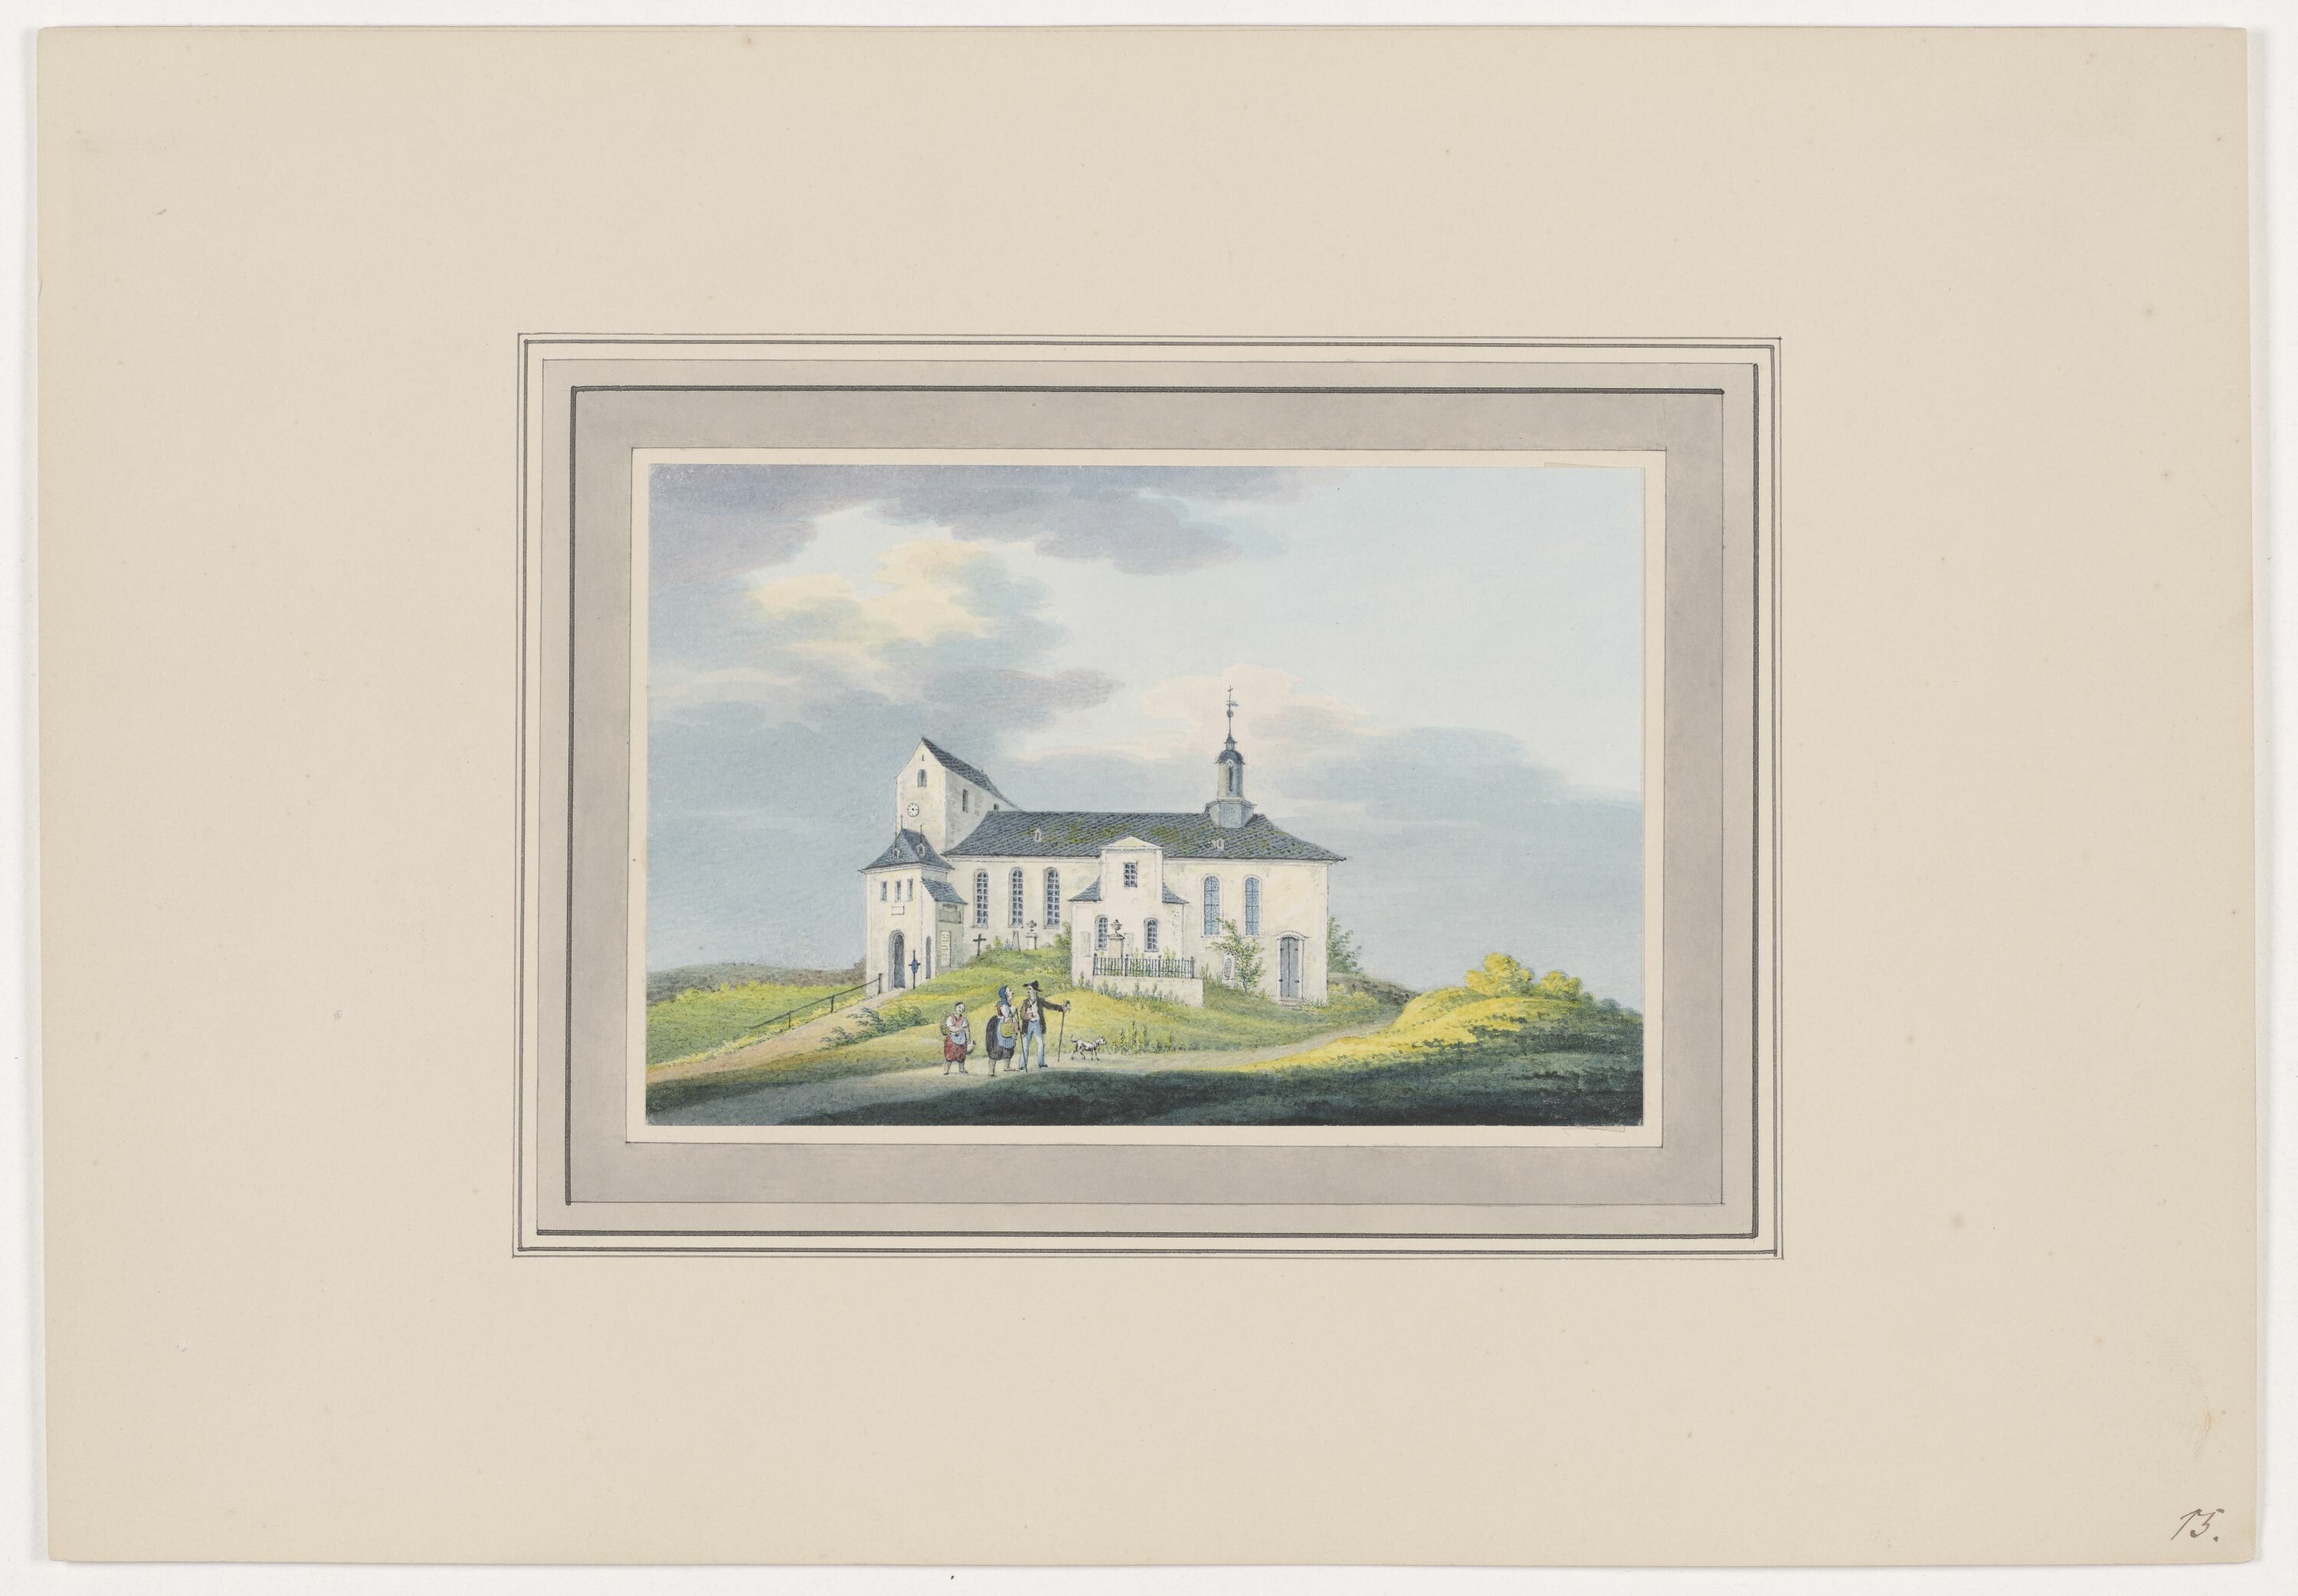 Kirche zu Schönau, aus Mappe: Dorfkirchen der Ephorie Zwickau, Blatt 15 (KUNSTSAMMLUNGEN ZWICKAU Max-Pechstein-Museum RR-F)